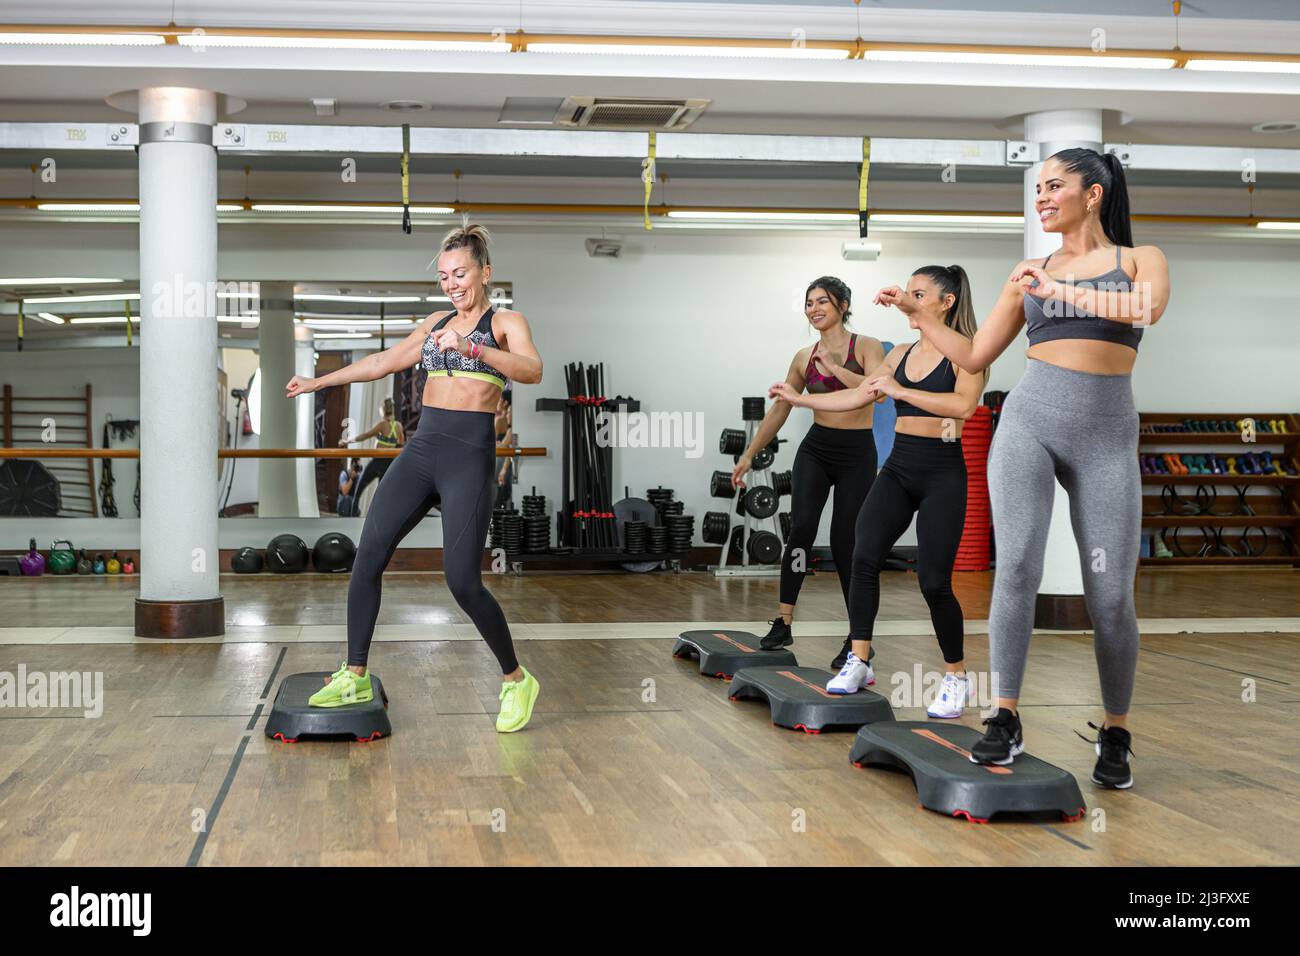 Eine Gruppe von glänzenden Sportlerinnen und Trainerin, die beim Aerobic-Training in einem geräumigen, modernen Fitnessstudio lächelnd und energisch auf Steppern tanzt Stockfoto